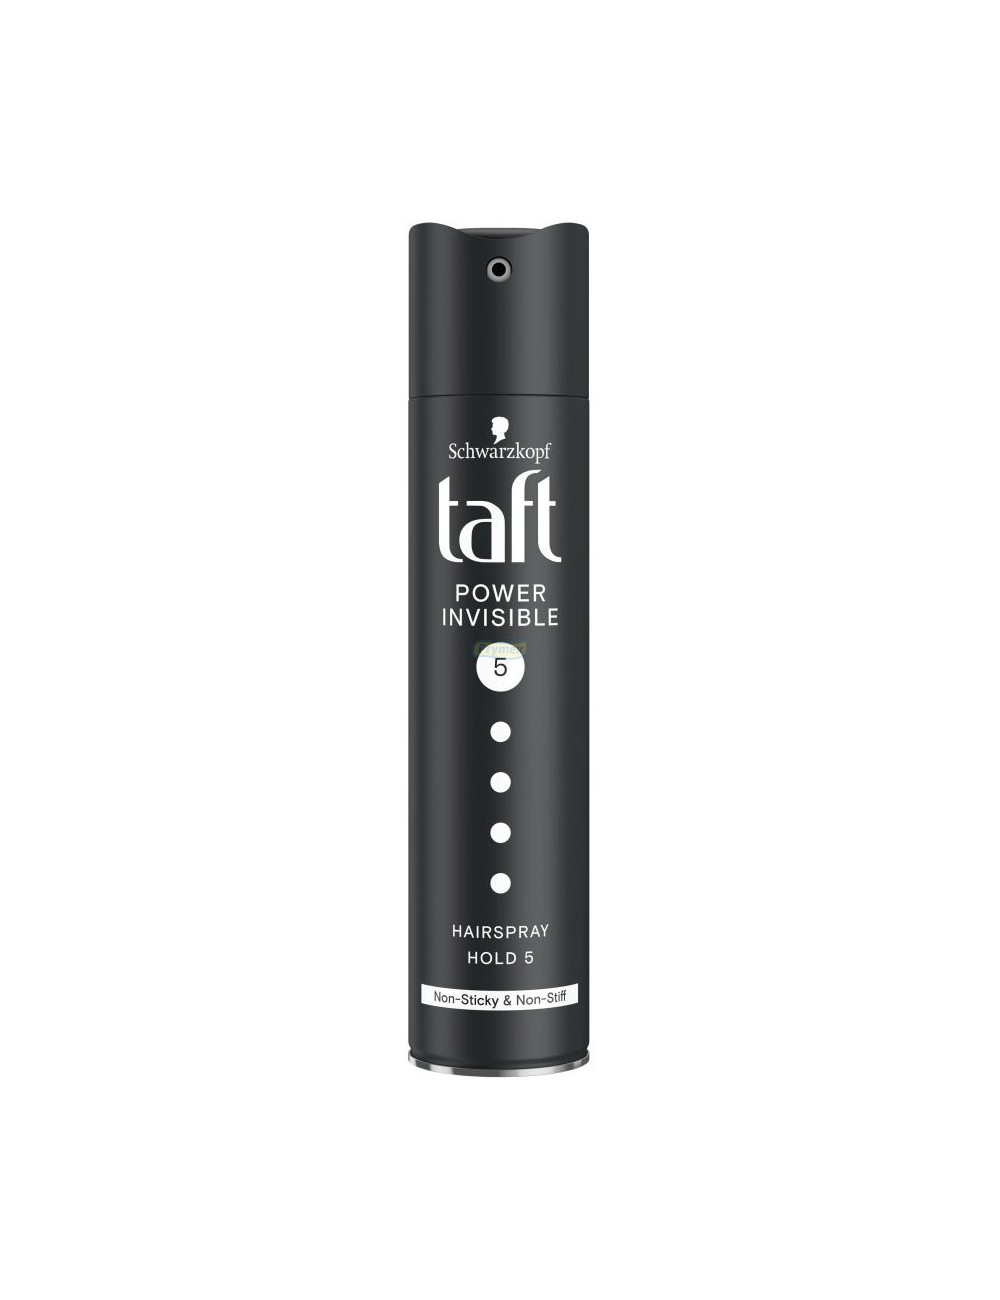 Taft Lakier do Włosów 5 Mega Mocny Invisible Power 250 ml (DE) - bez sklejenia i efektu obciążenia